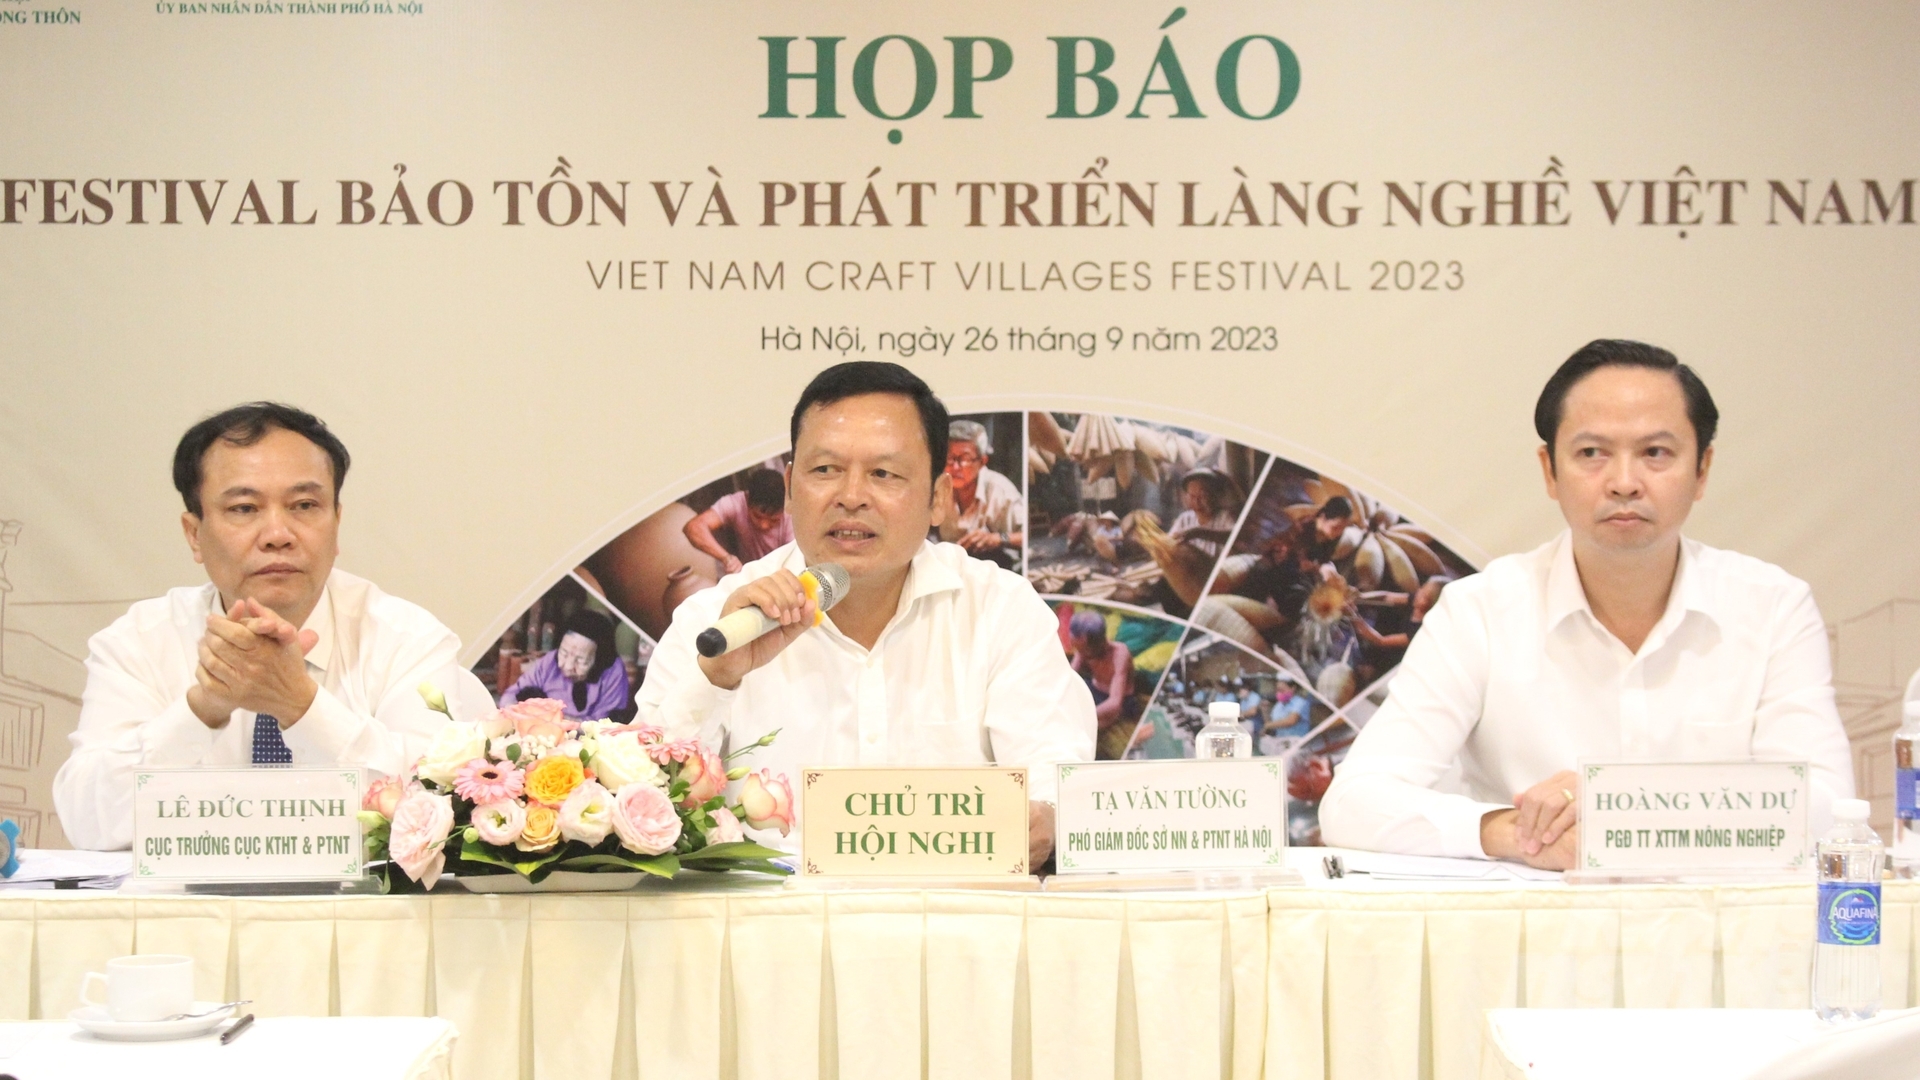 Lễ khai mạc Festival Bảo tồn và phát triển làng nghề Việt Nam năm 2023 dự kiến sẽ diễn ra vào tối 9/11 tại Hoàng thành Thăng Long (Hà Nội). Ảnh: Trung Quân.